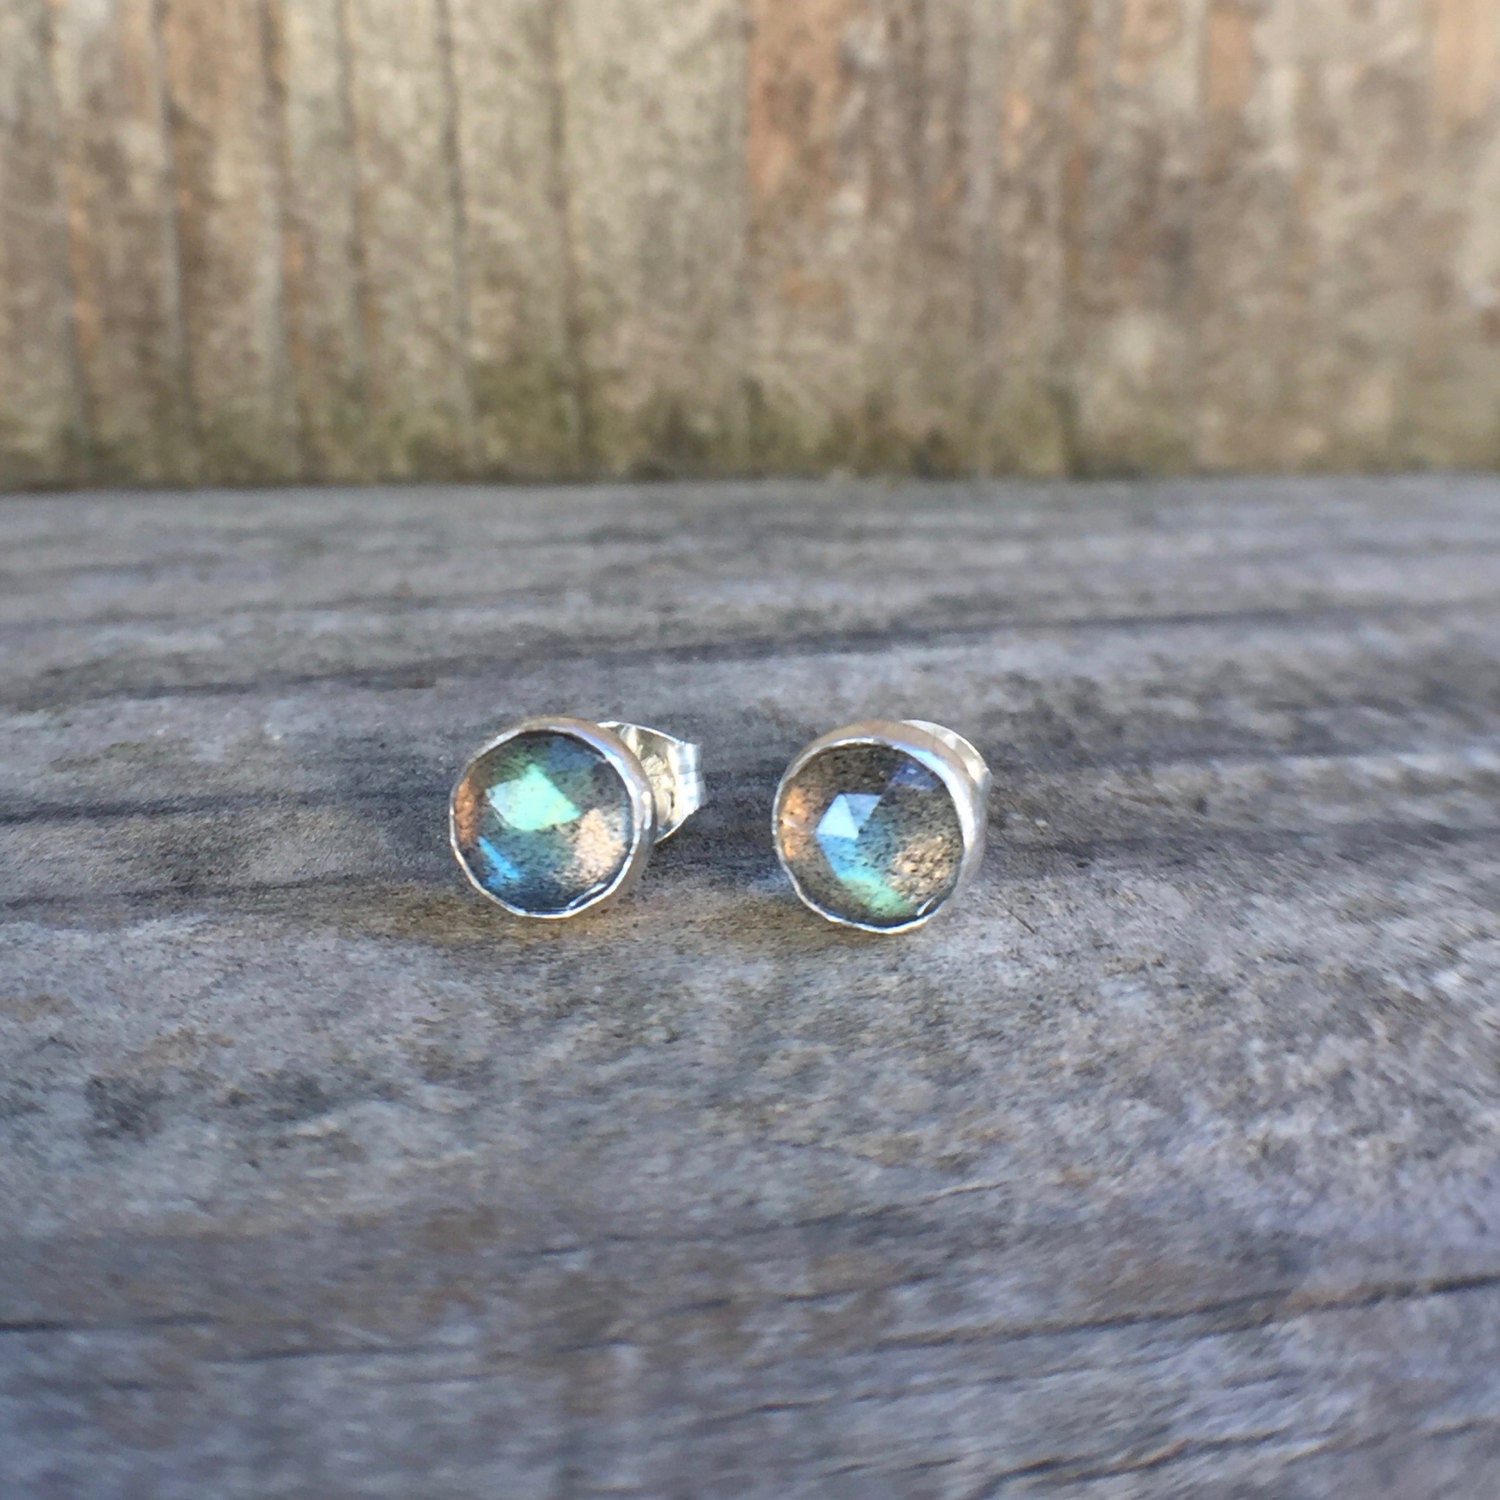 Labradorite stud earrings sterling silver handmade